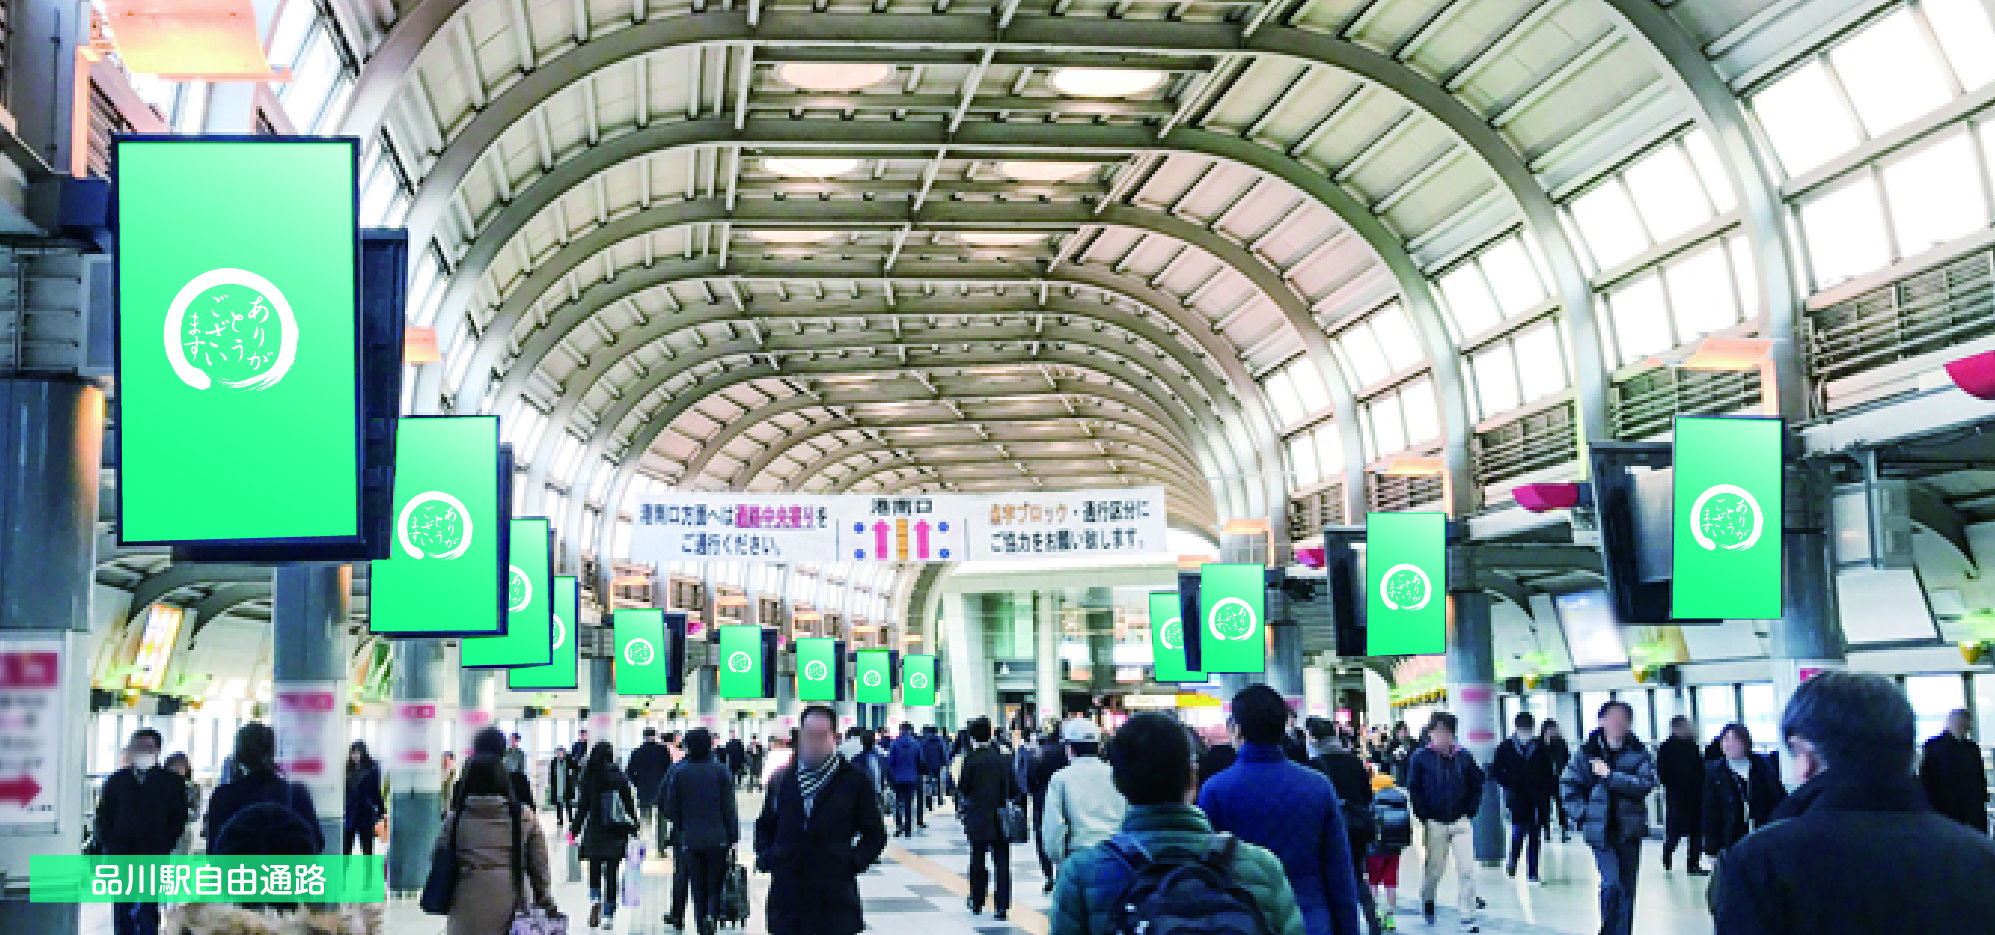 品川駅自由通路セット デジタルサイネージ Jr東日本広告もグローアップ Jr首都圏 東京の交通広告